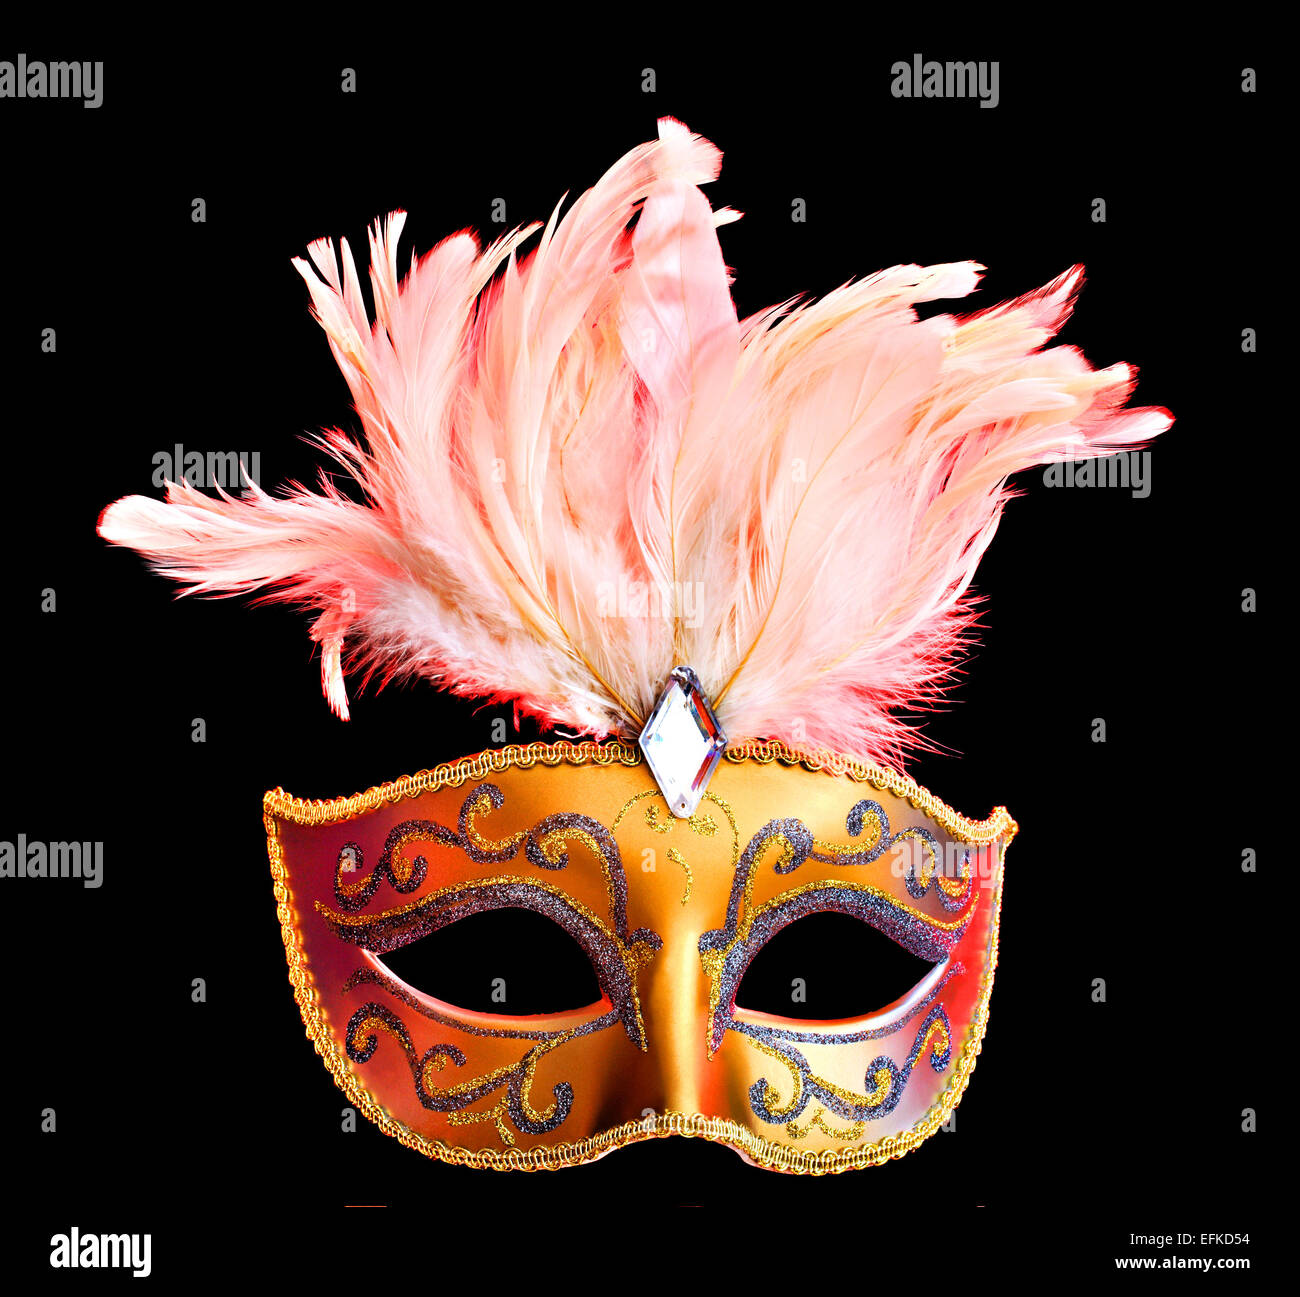 Un masque arlequin avec plumes illuminées par un éclairage rouge Banque D'Images